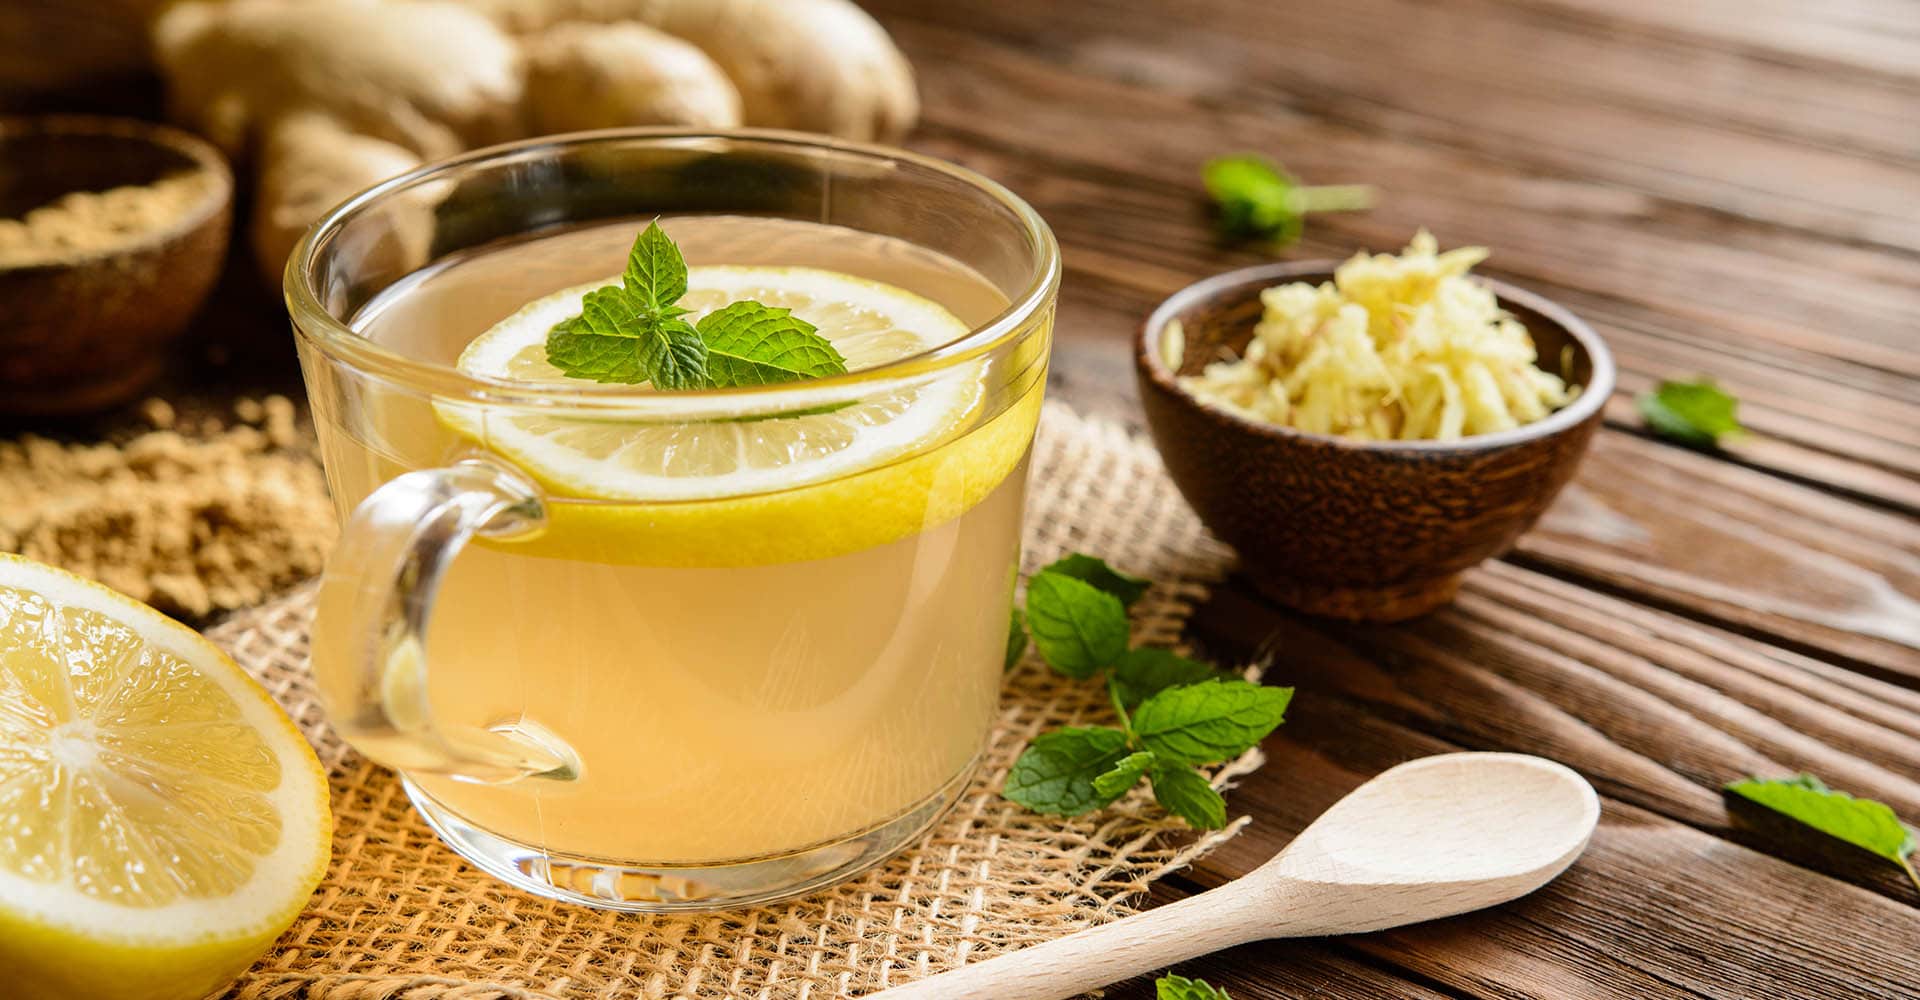 Hausmittel gegen Erkältung wie Zitrone und Ingwer